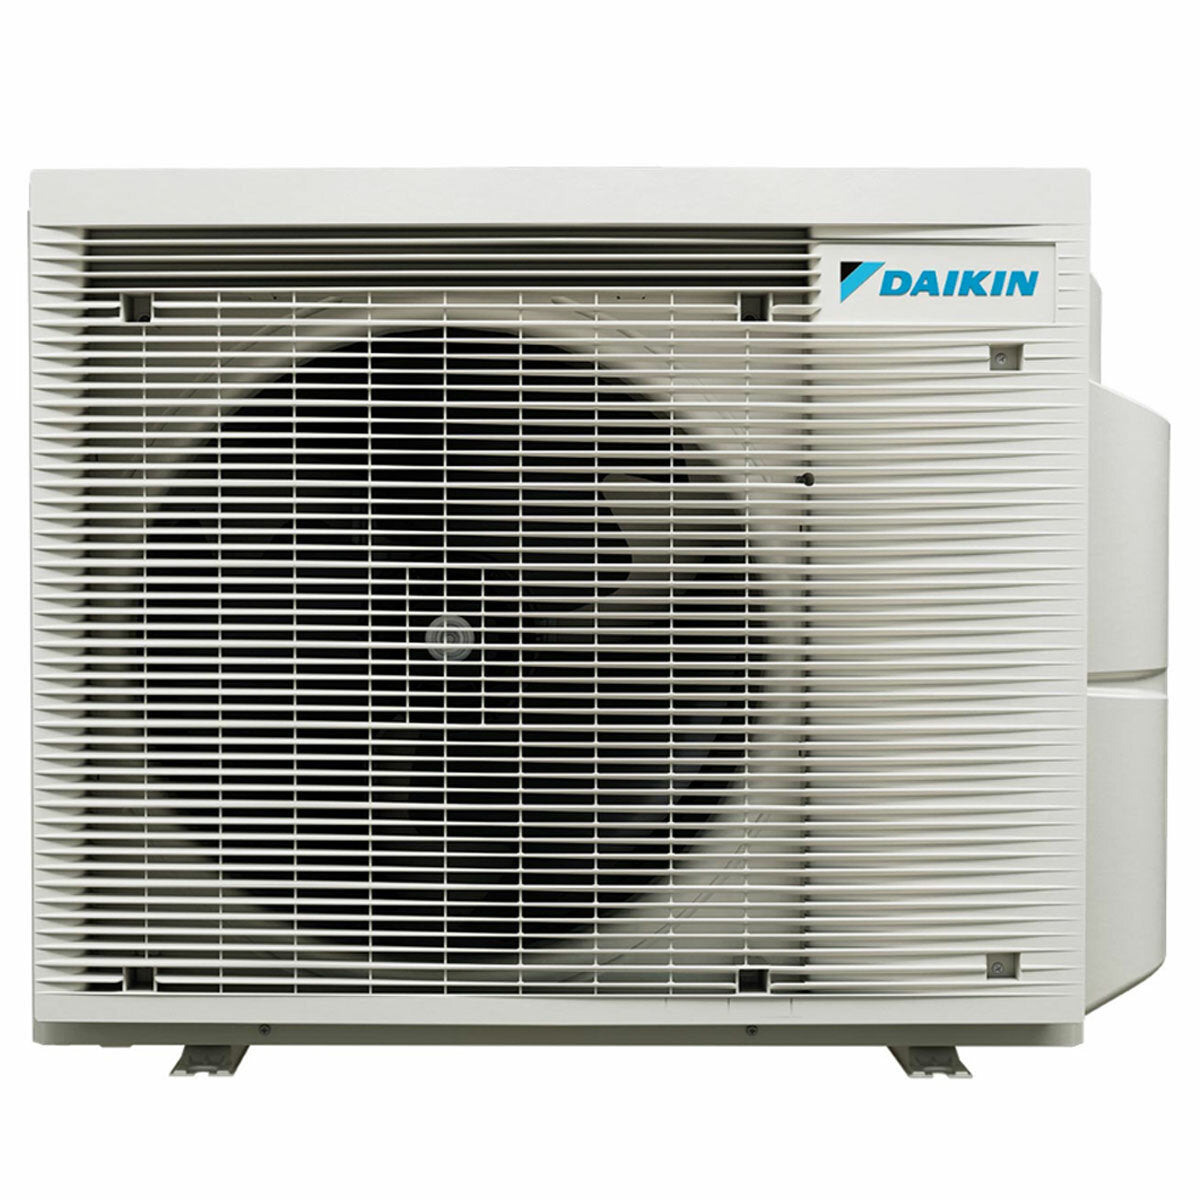 Daikin Emura 3 trial split air conditioner 9000+12000+18000 BTU inverter A+ wifi outdoor unit 6.8 kW White